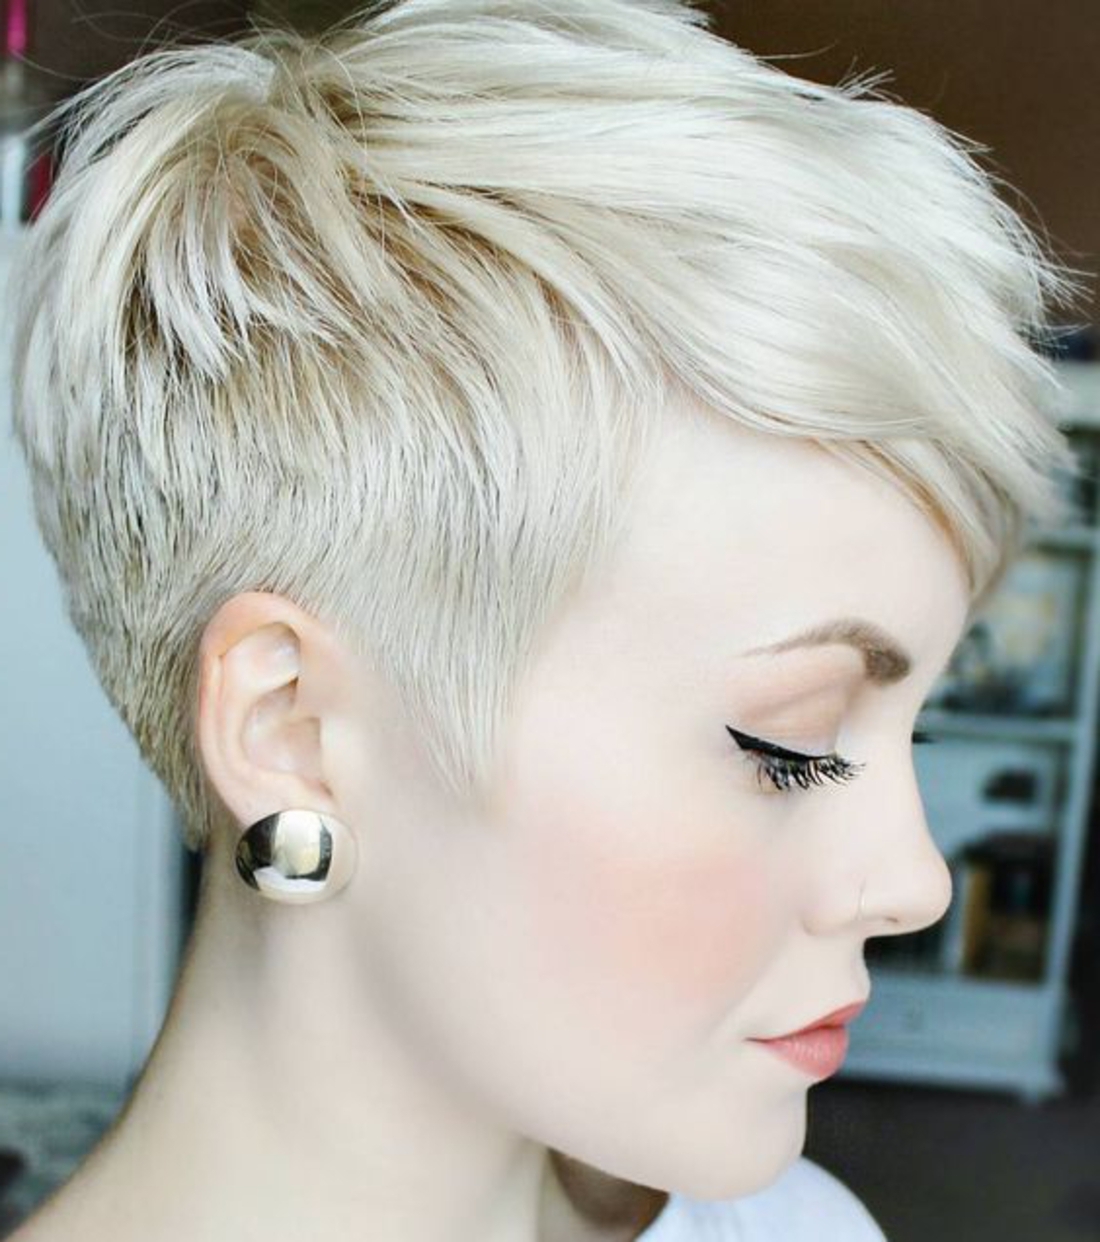 Kurzhaar Undercut blonde Haare massive silberne Ohrringe, weiße Bluse, schöne Schminke